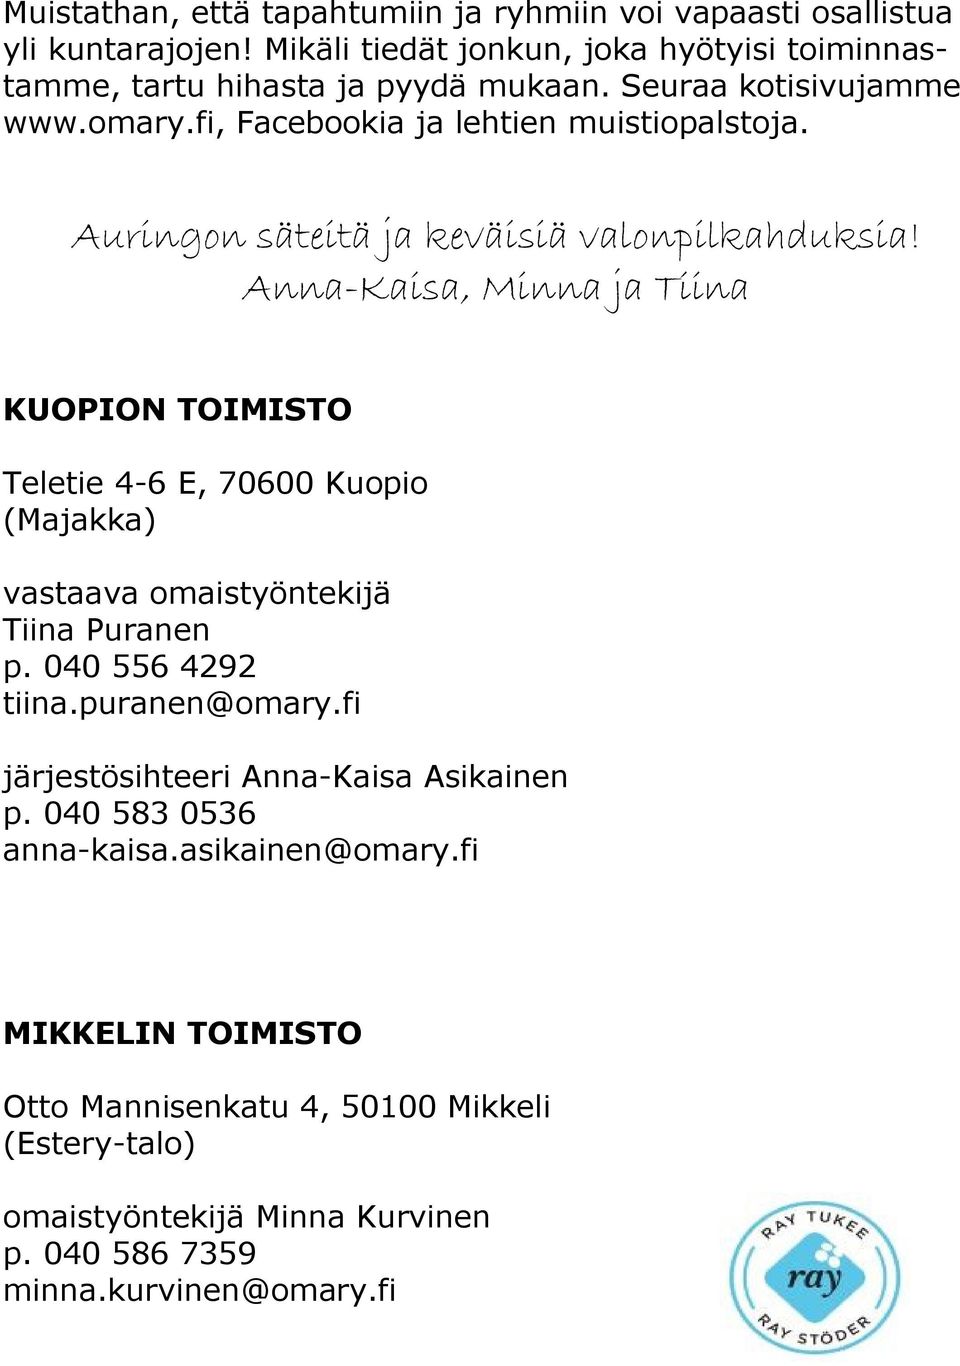 Anna-Kaisa, Minna ja Tiina KUOPION TOIMISTO Teletie 4-6 E, 70600 Kuopio (Majakka) vastaava omaistyöntekijä Tiina Puranen p. 040 556 4292 tiina.puranen@omary.